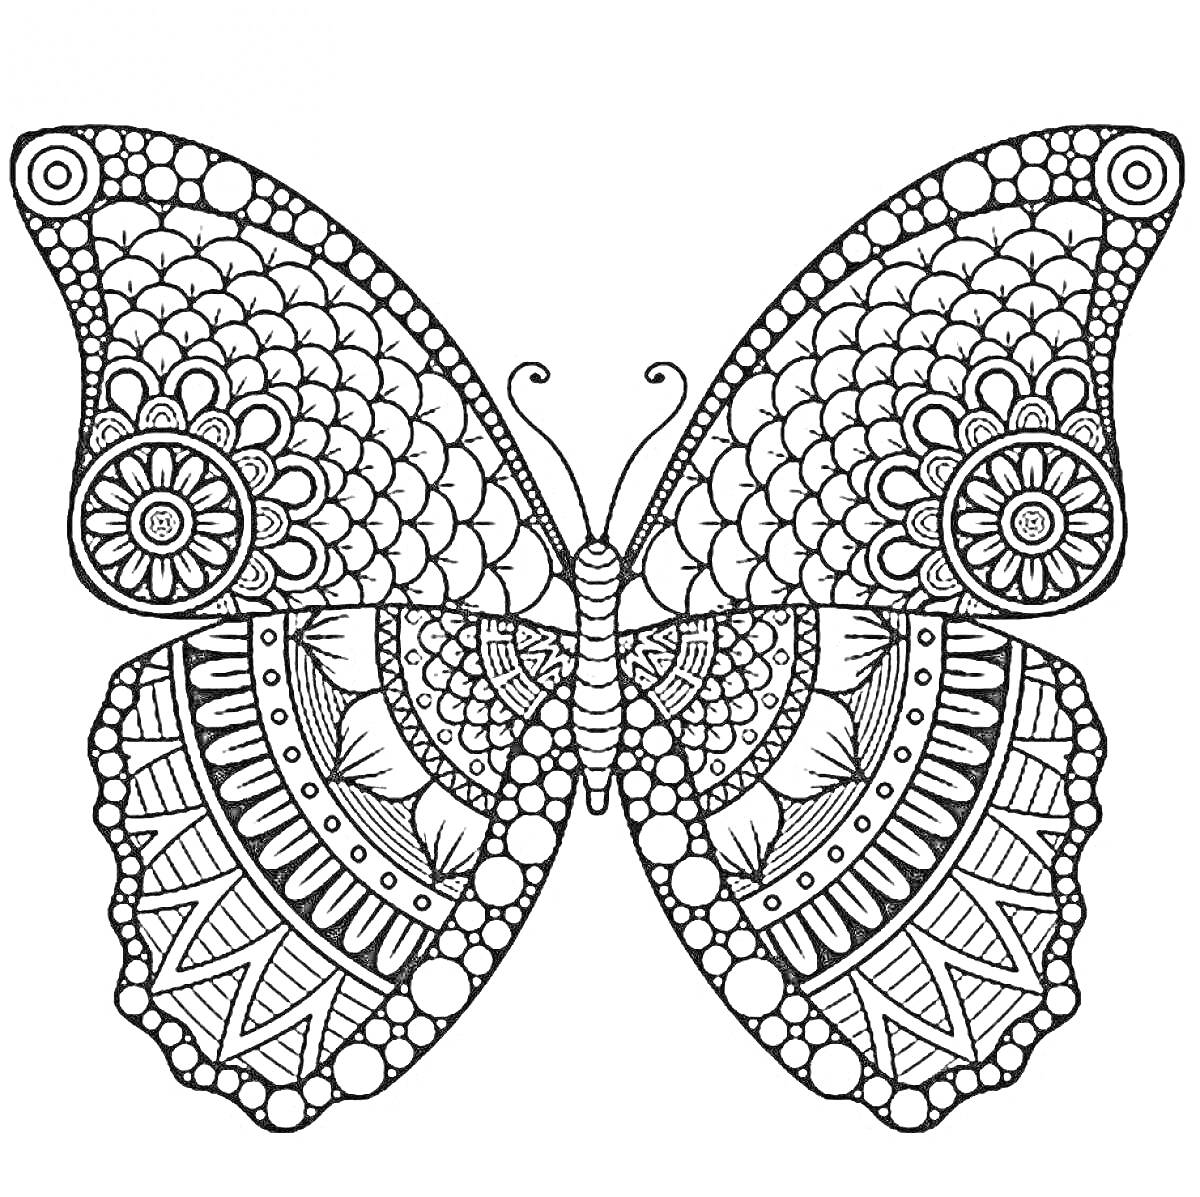 Бабочка с узорами из точек, линий и цветочных элементов